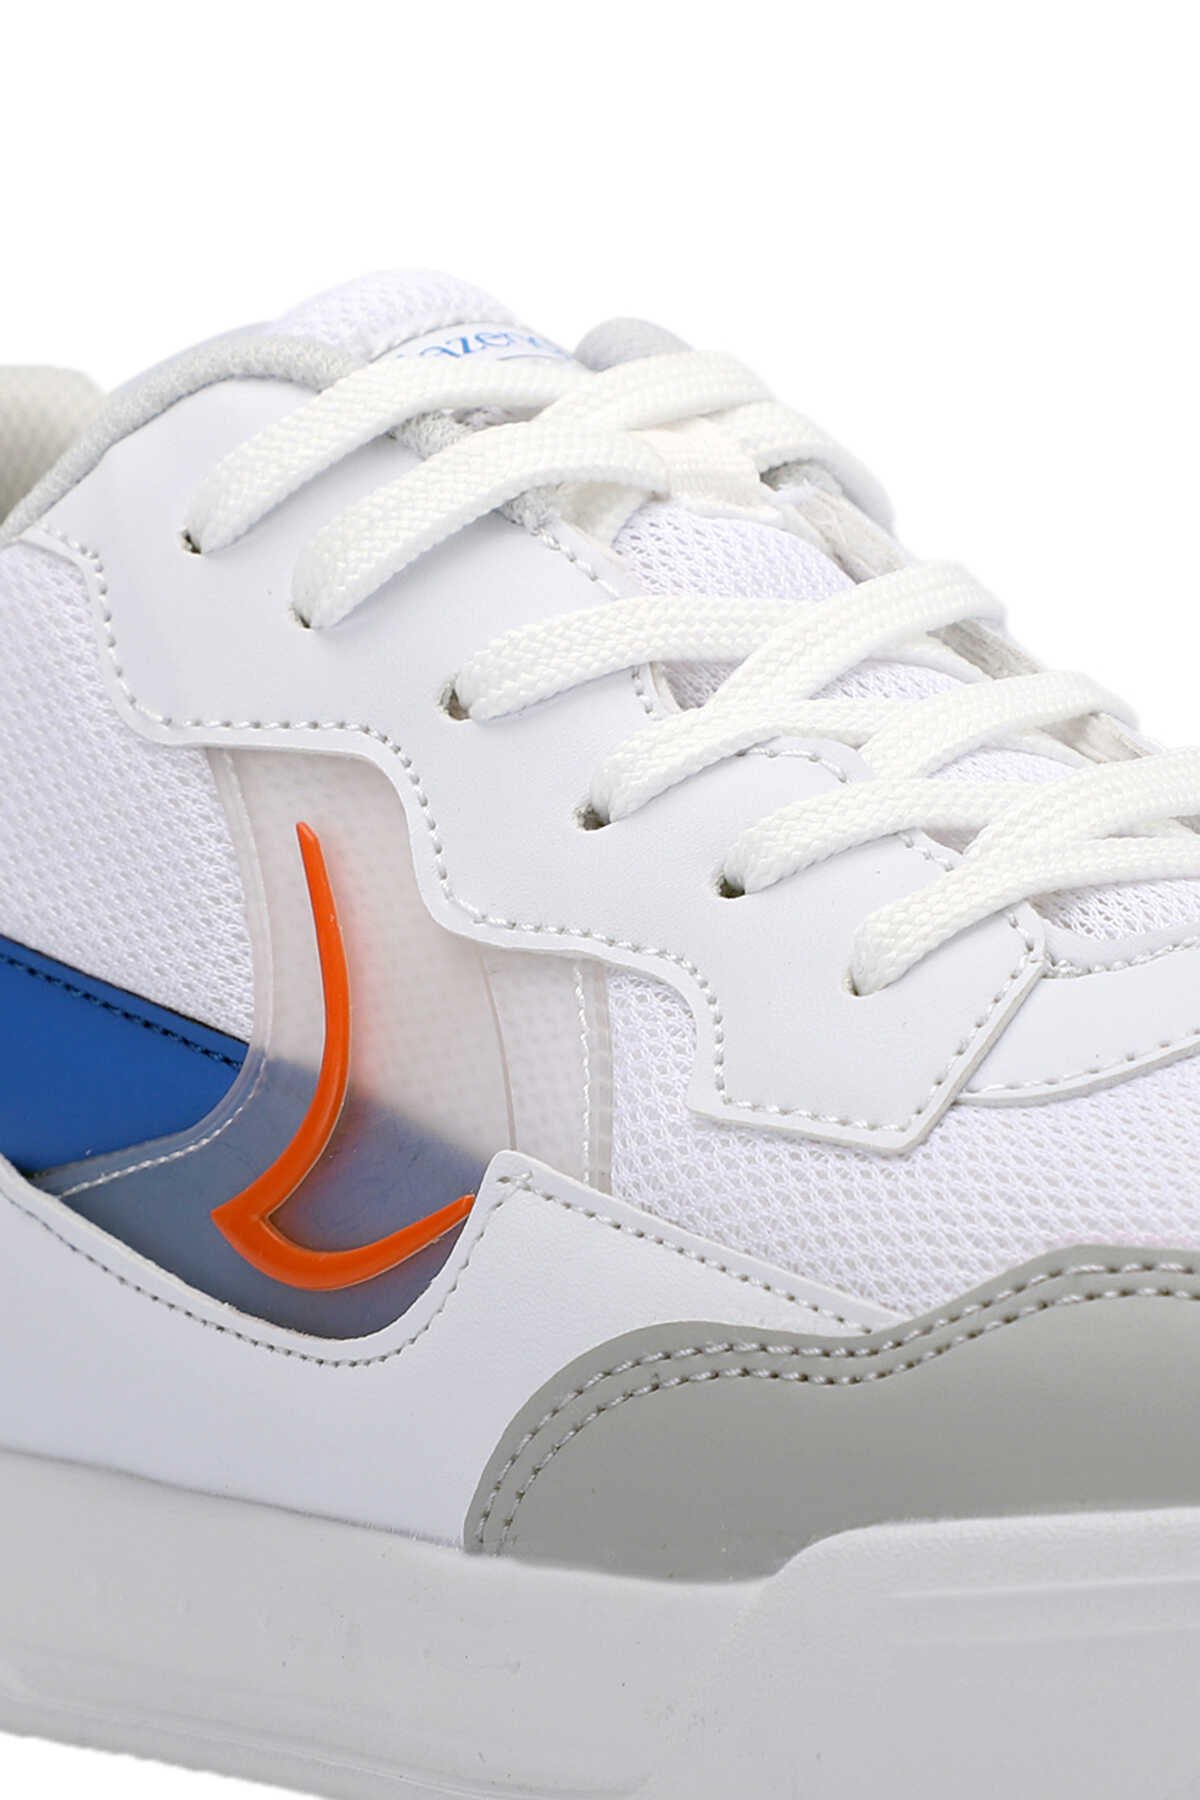 Slazenger BARBRO Sneaker Erkek Ayakkabı Beyaz / Turuncu